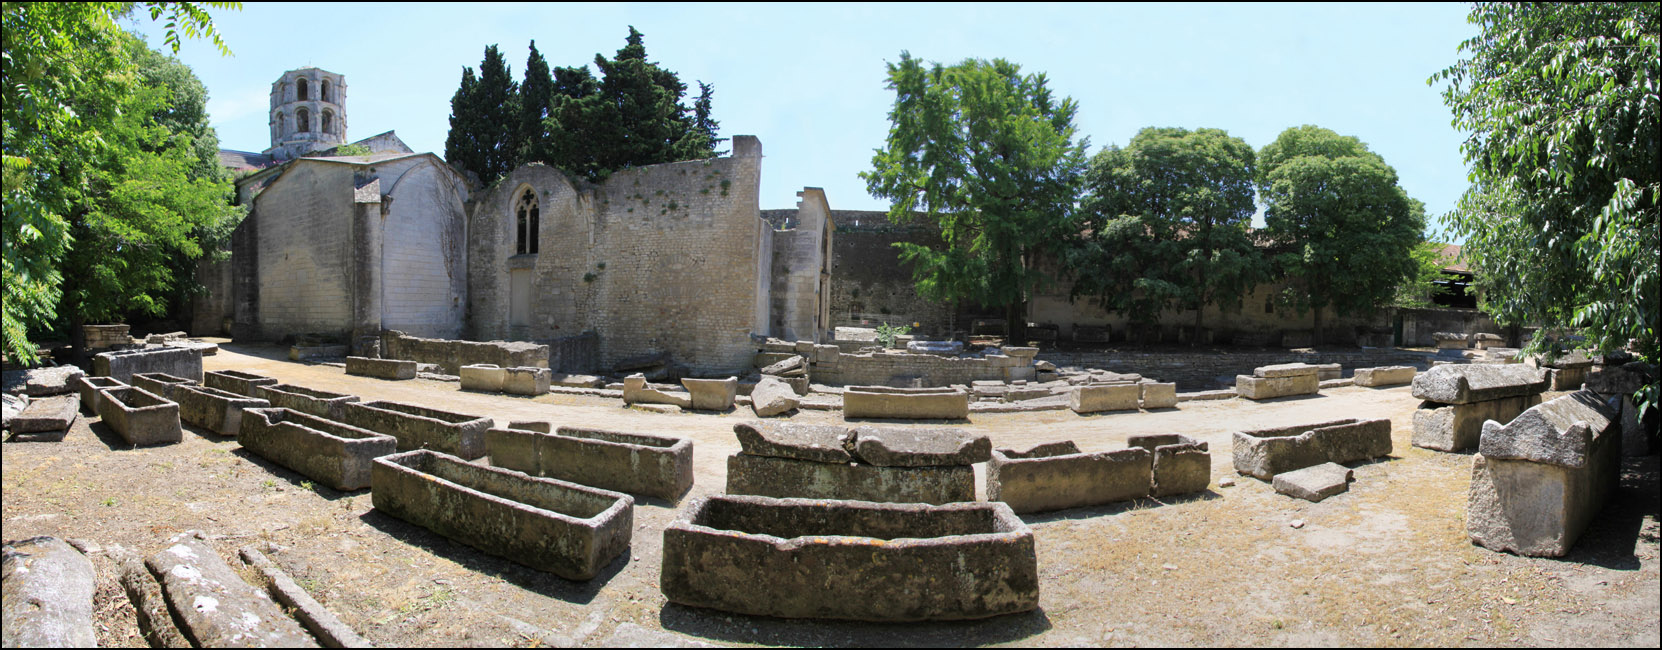 مقبرة غالو الروماني مدينة آرل الفرنسية